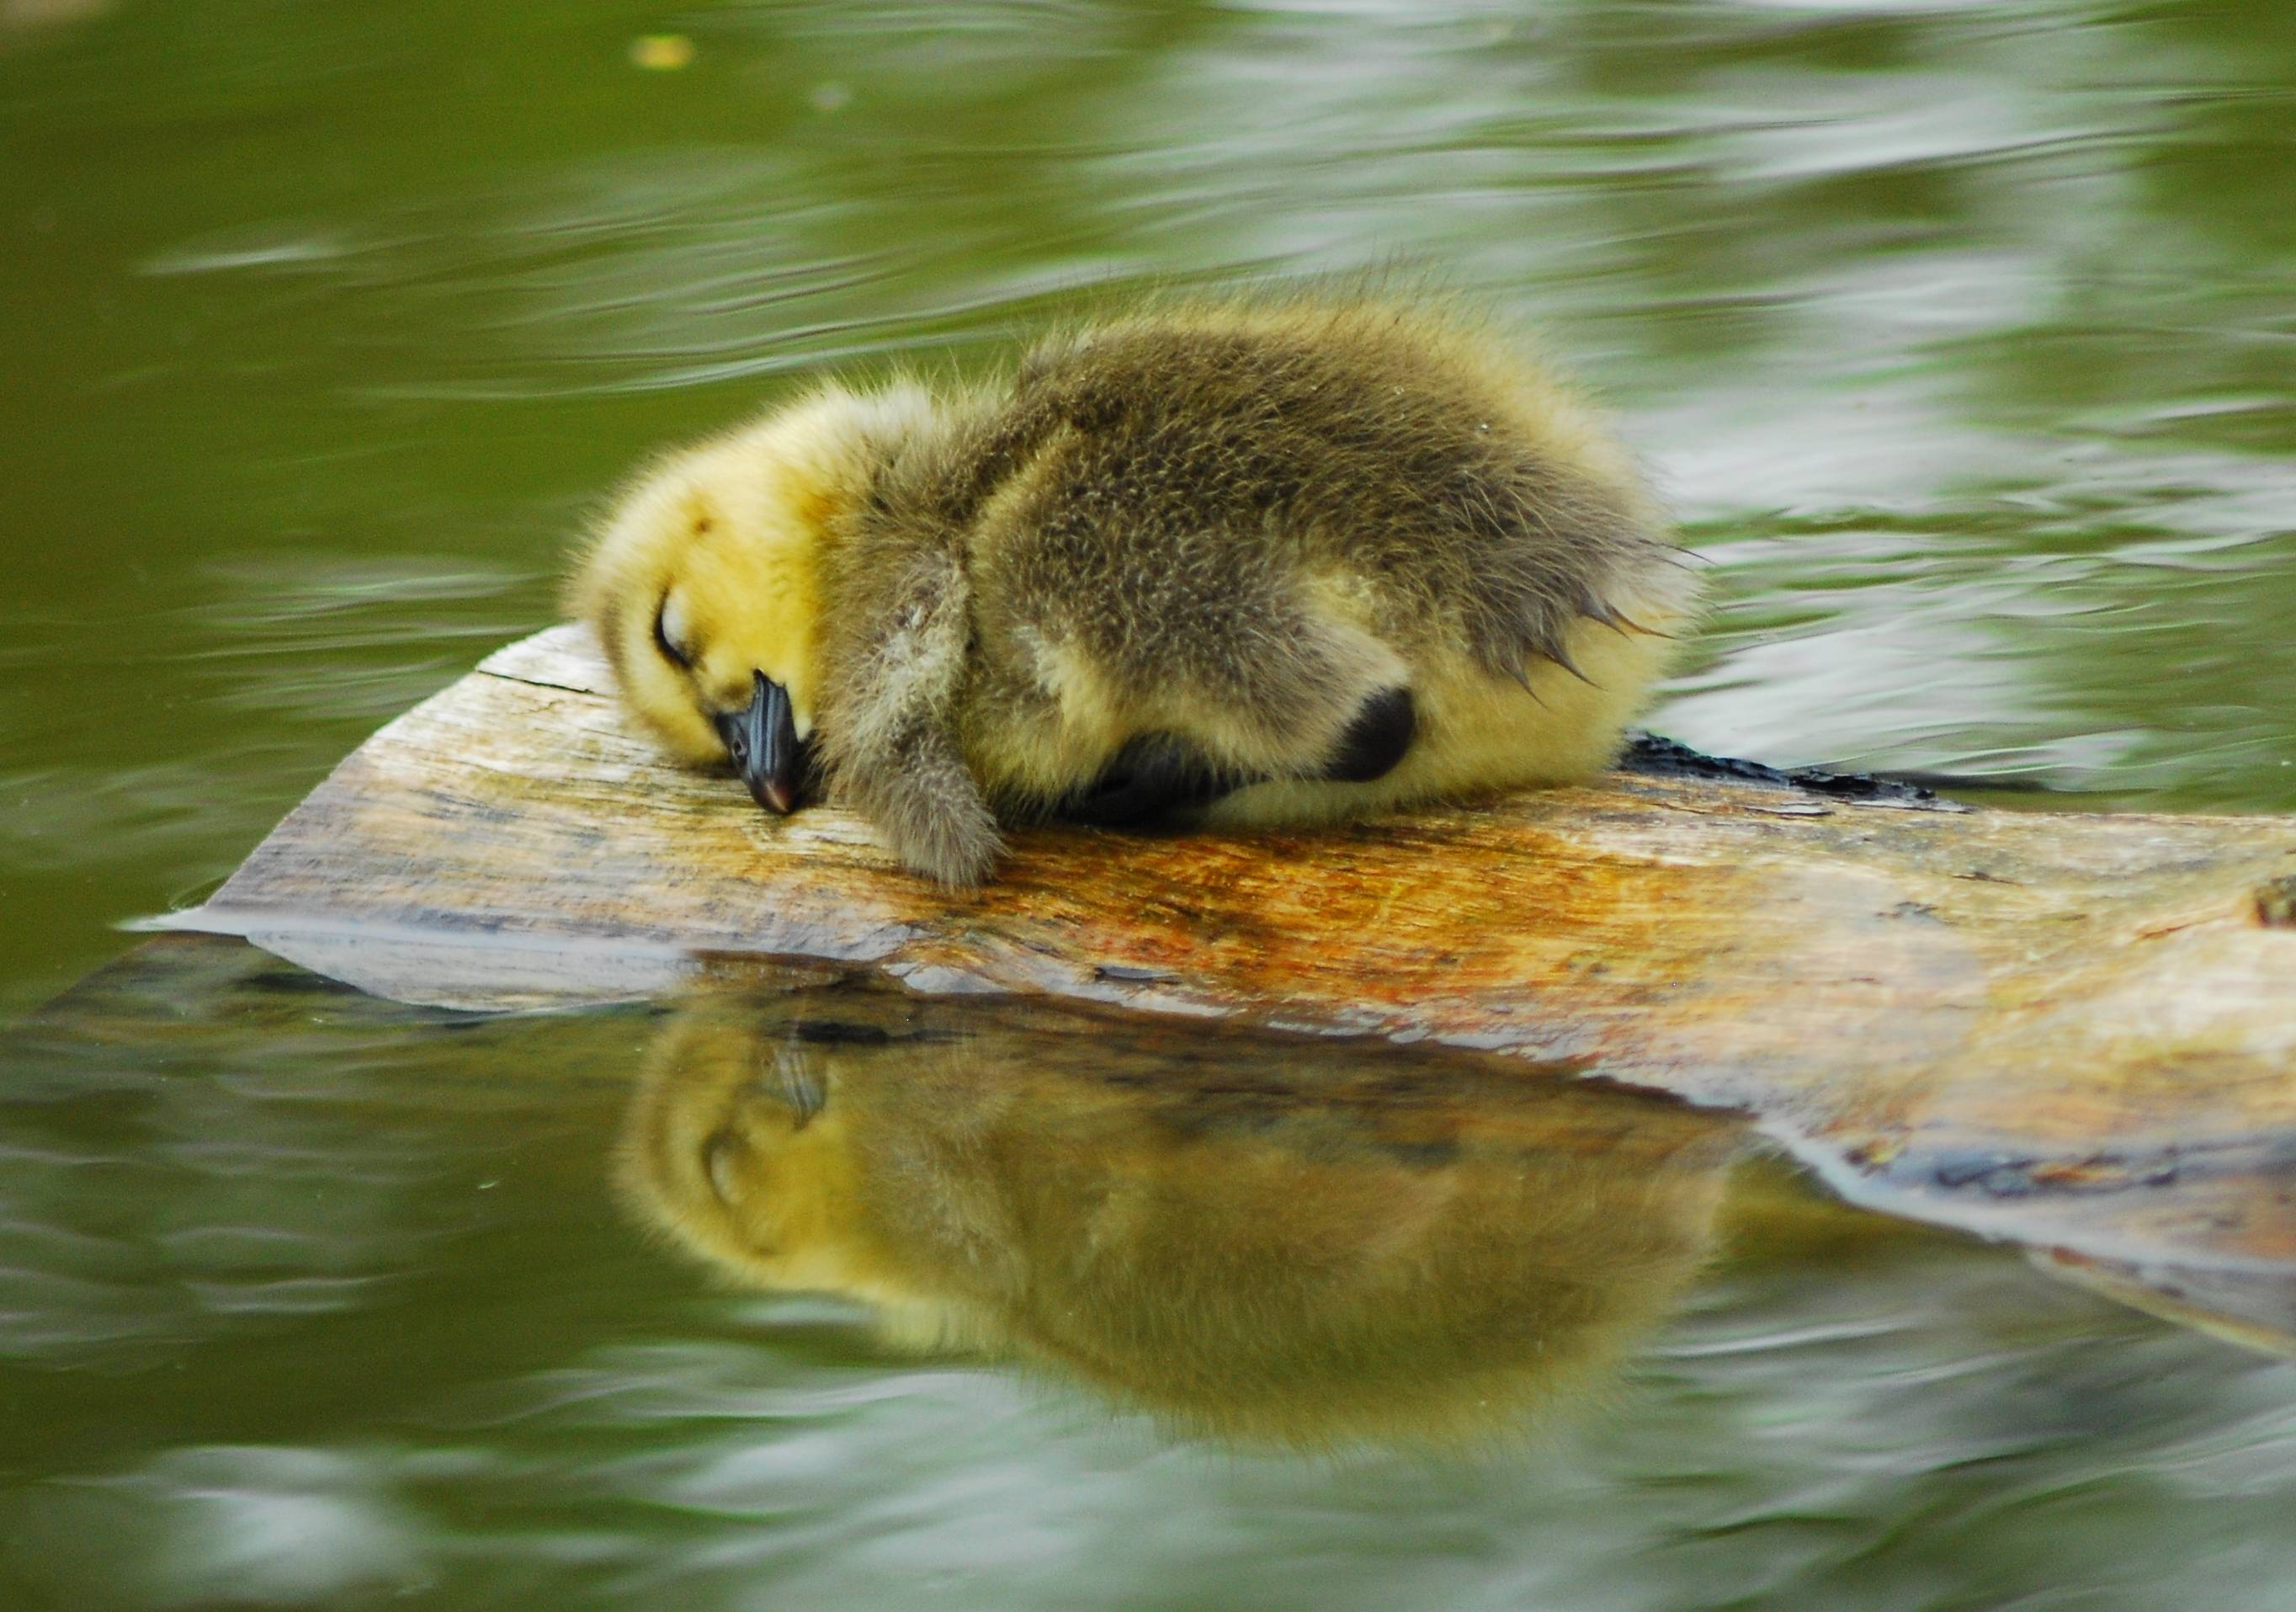 Sleepy duckling - Imgur